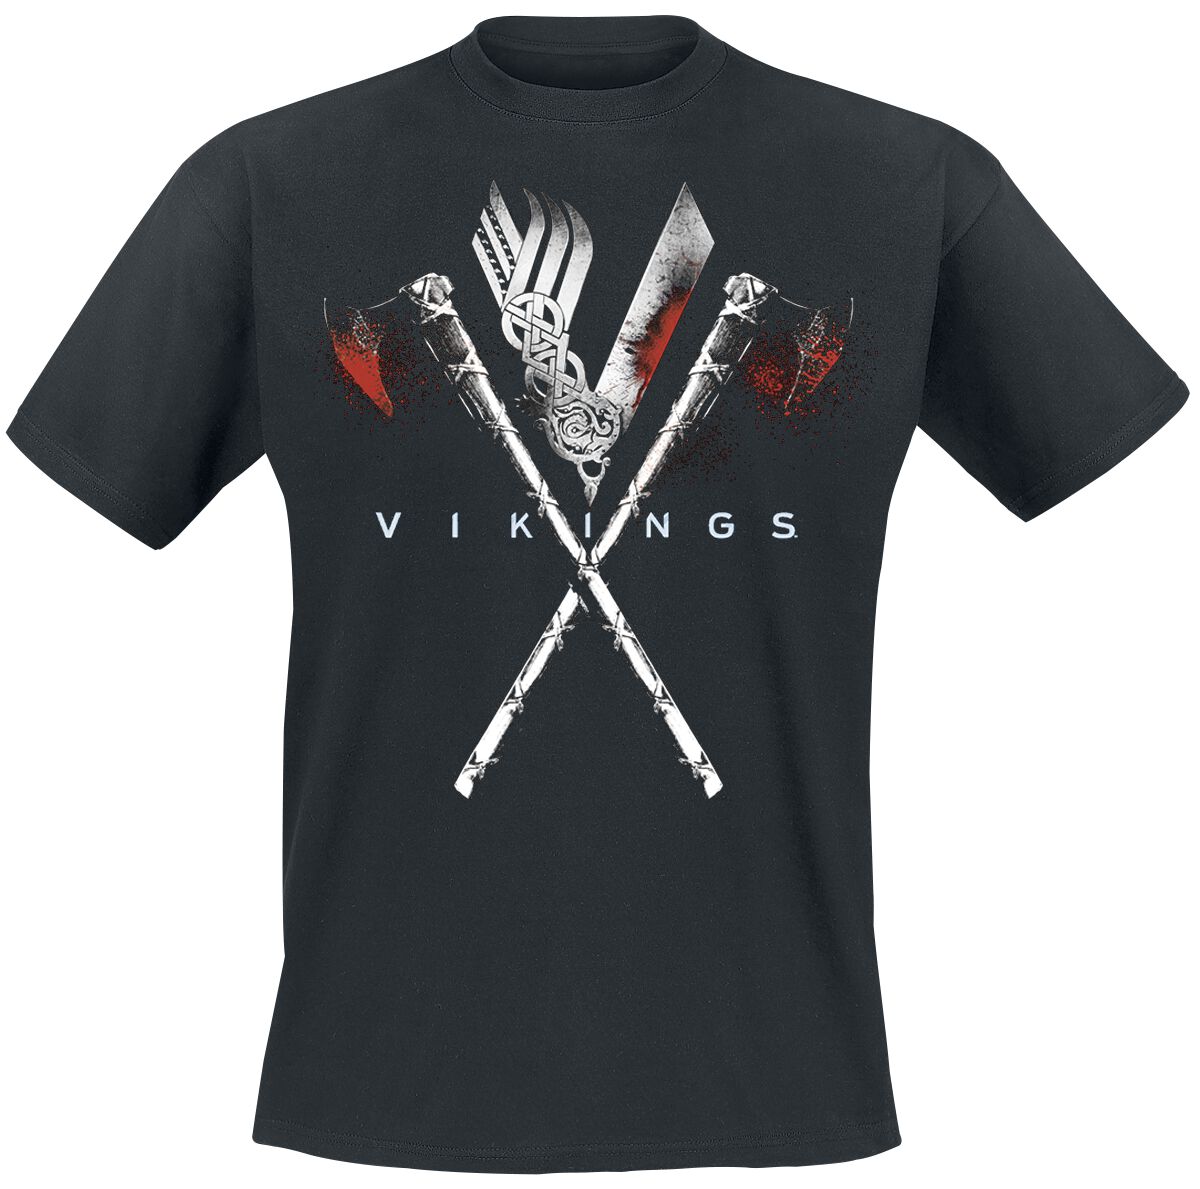 Vikings T-Shirt - Axe To Grind - S bis L - für Männer - Größe S - schwarz  - Lizenzierter Fanartikel